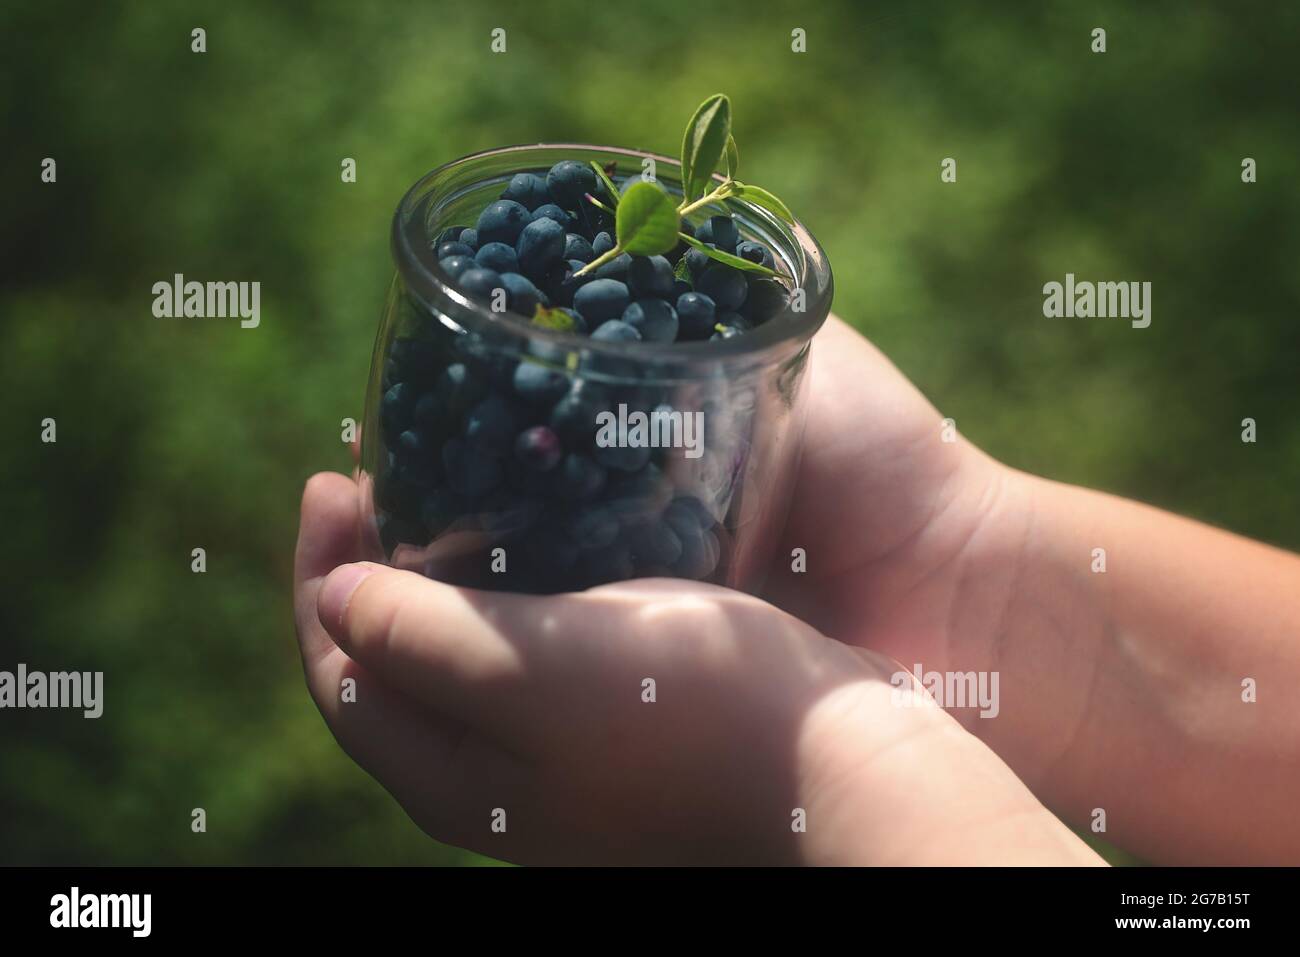 Heidelbeeren in einem Glas, das von Kinderhänden gehalten wird. Grüner Hintergrund. Hochwertige Fotos Stockfoto